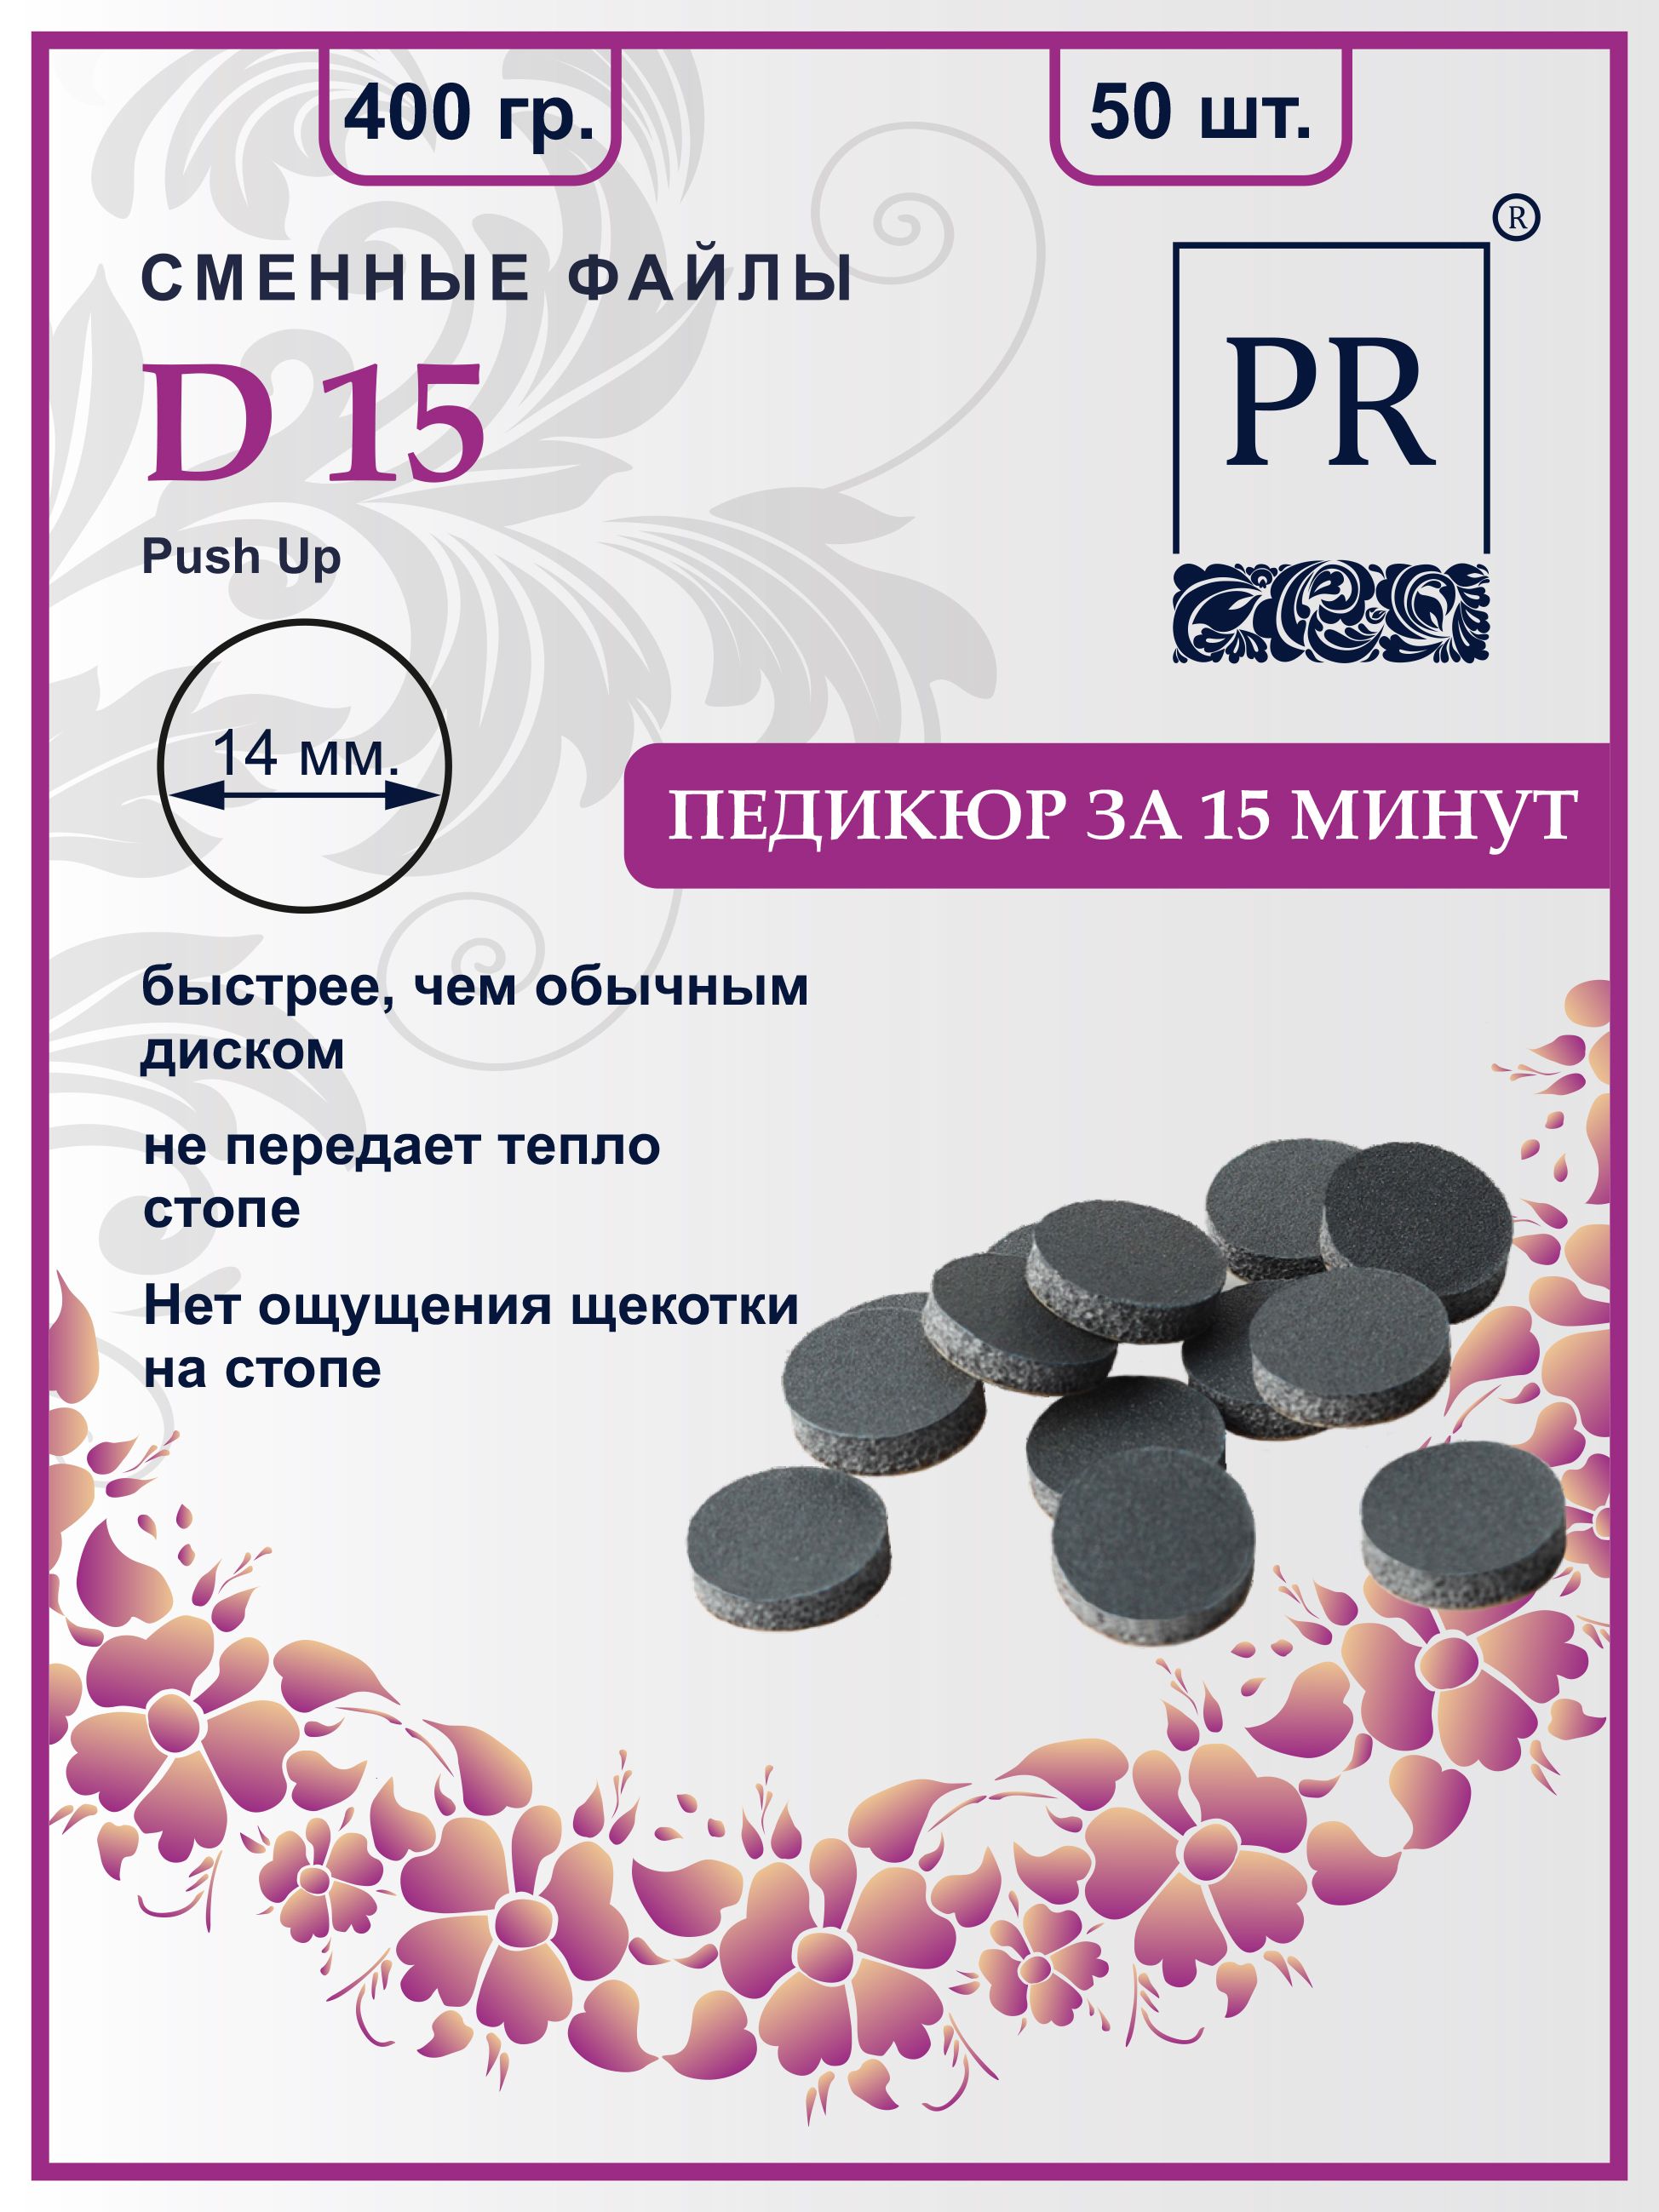 Сменные файлы Pilochki Russia диски Push Up для педикюра для диска S 400 грит 50 штук